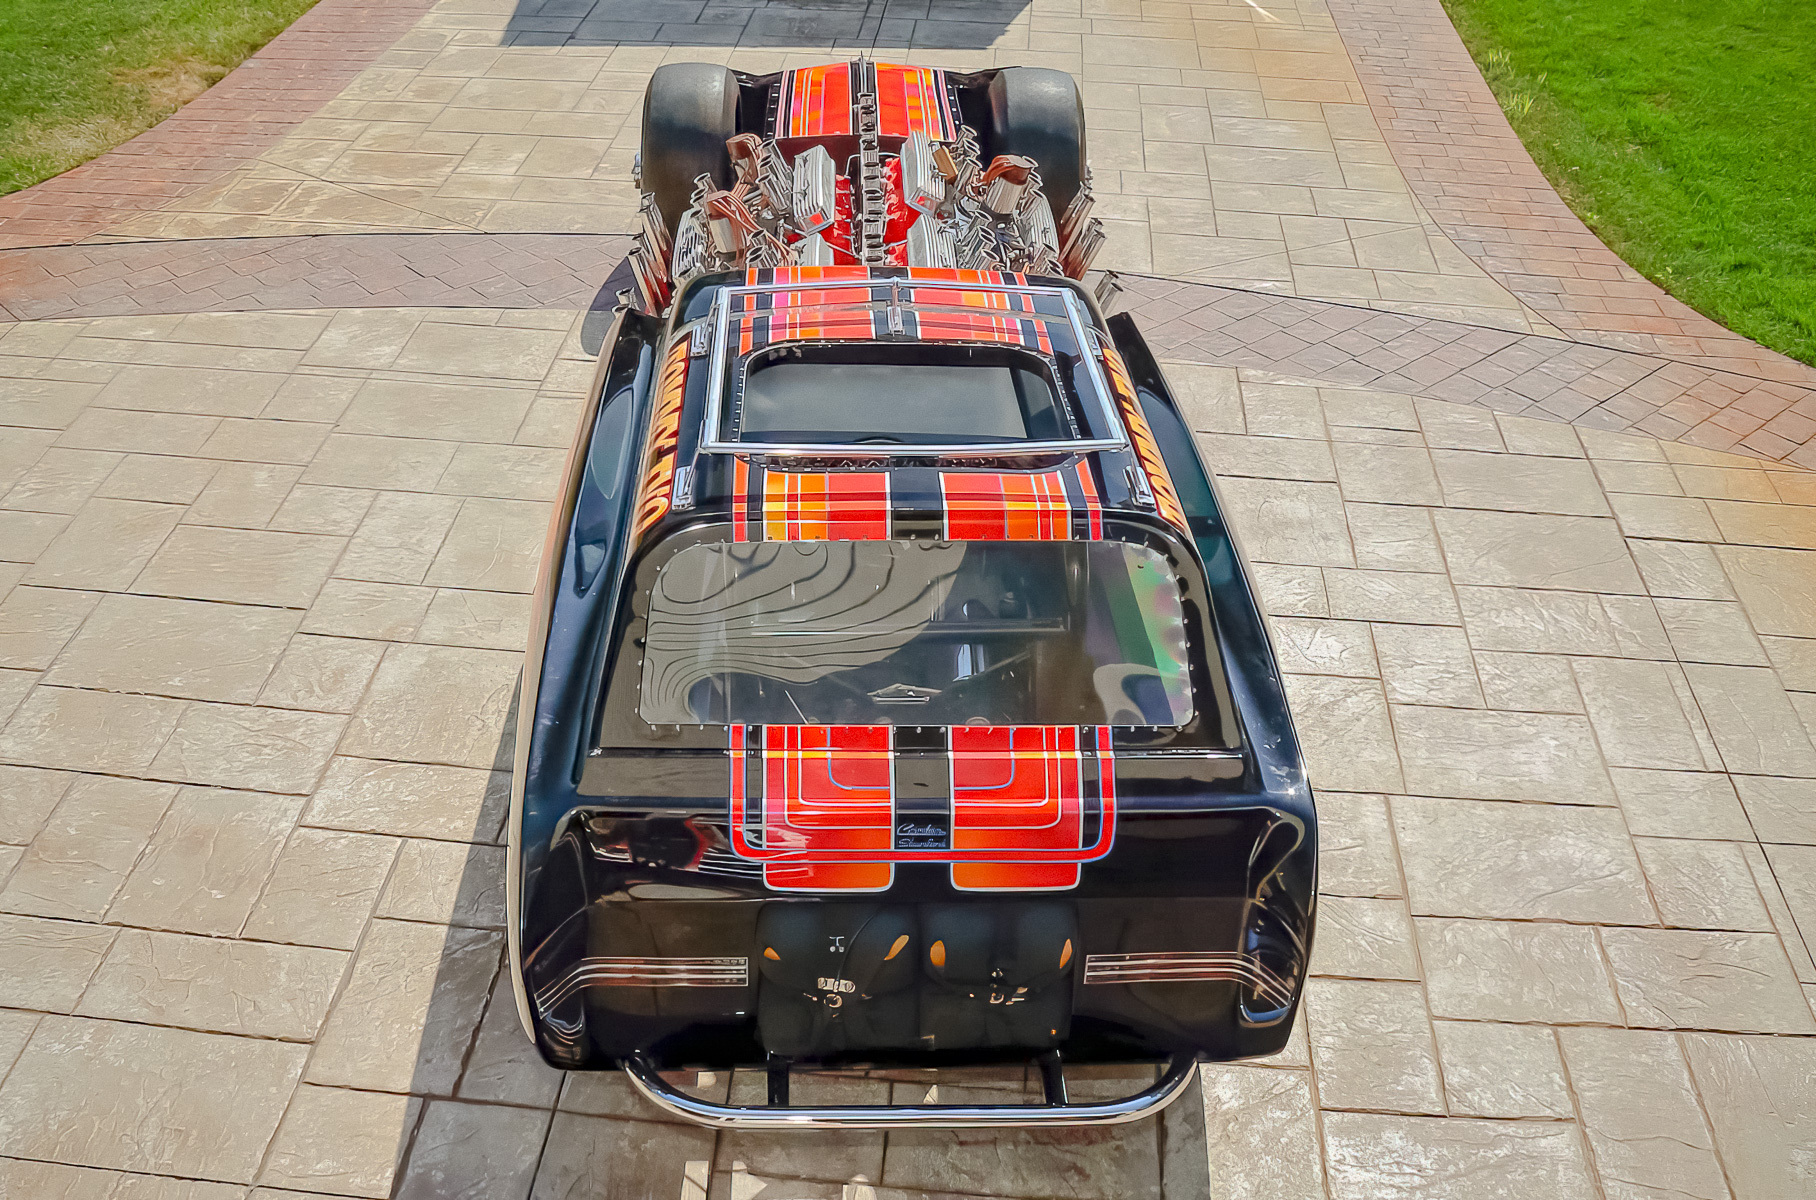 Посмотрите на уникальный одноместный хот-род Buick, у которого четыре мотора V8